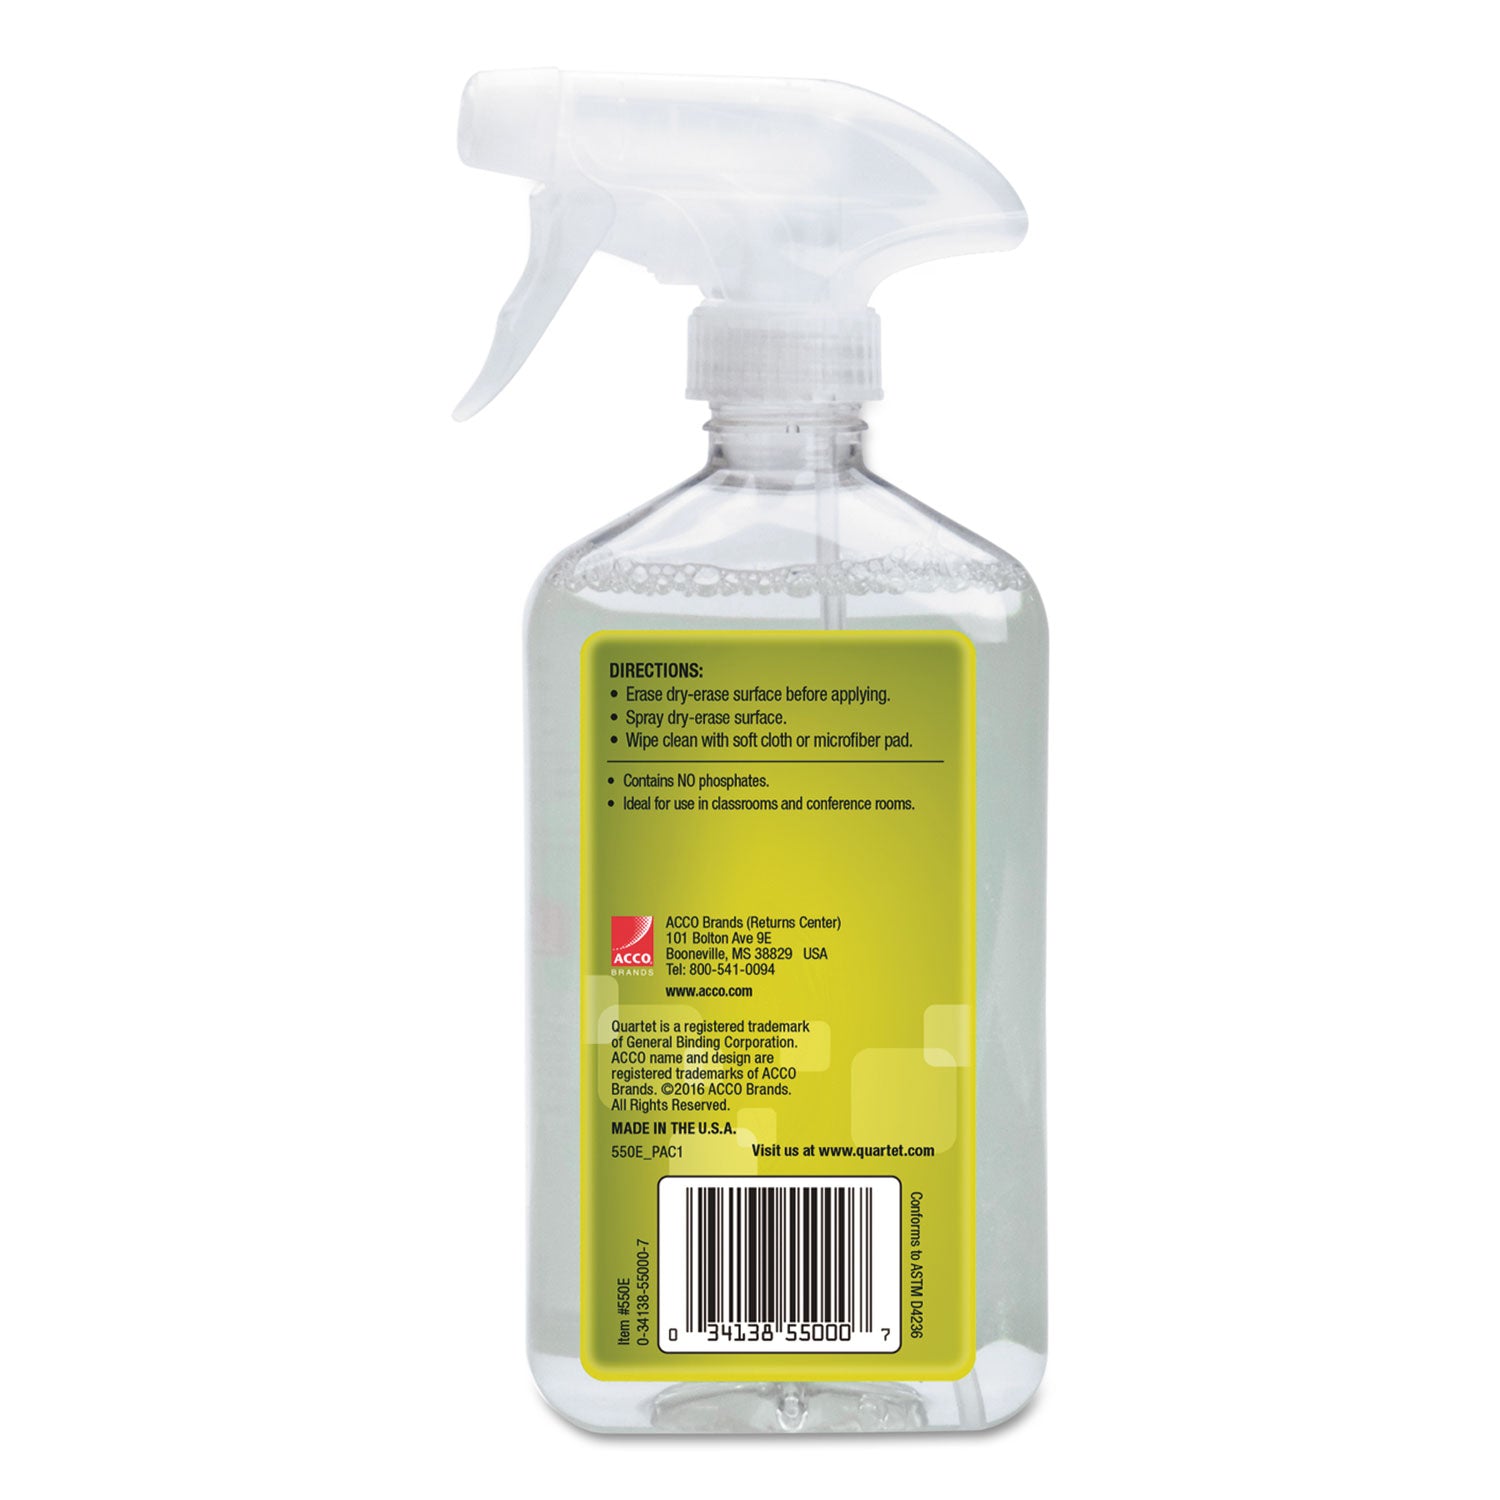 Whiteboard Spray Cleaner for Dry Erase Boards, 17 oz Spray Bottle - 